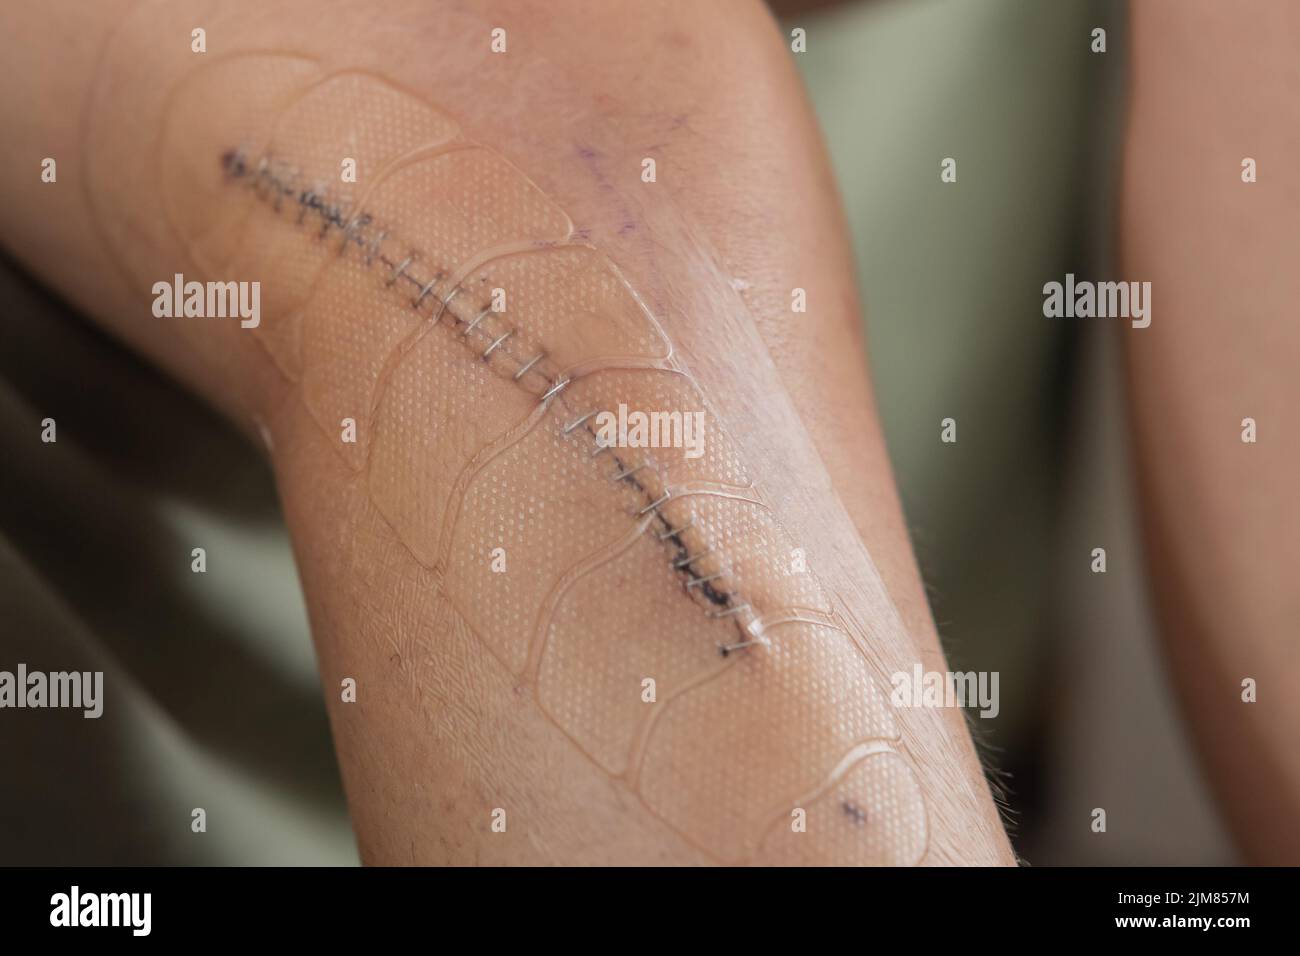 Agrafes métalliques ou points de suture sur une plaie fraîche après une chirurgie du genou. Plaie et points de suture recouverts d'un couvercle de sécurité auto-adhésif en plastique pour éviter les ecchymoses Banque D'Images